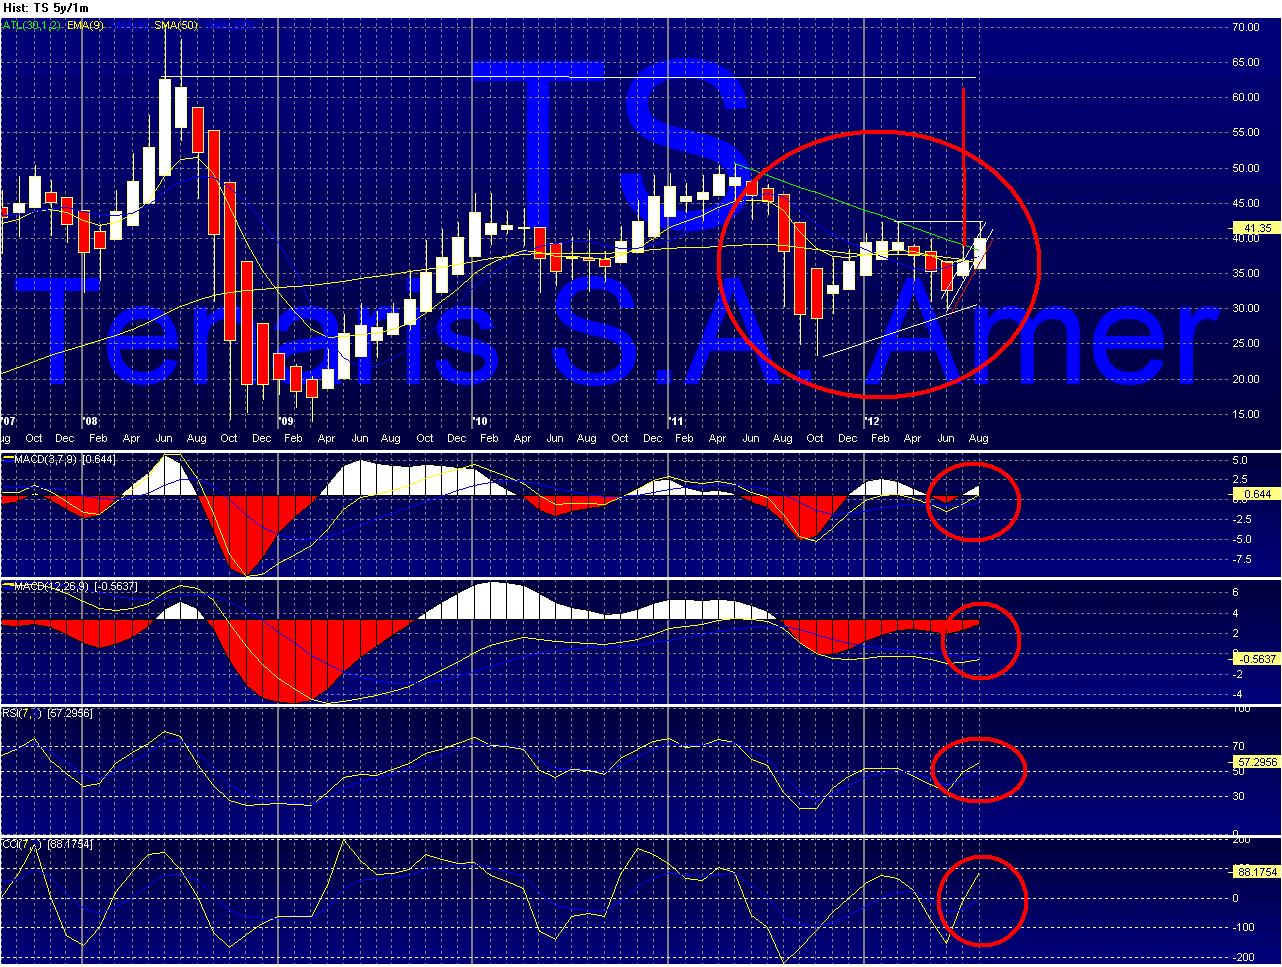 TS - Tenaris Chart_12